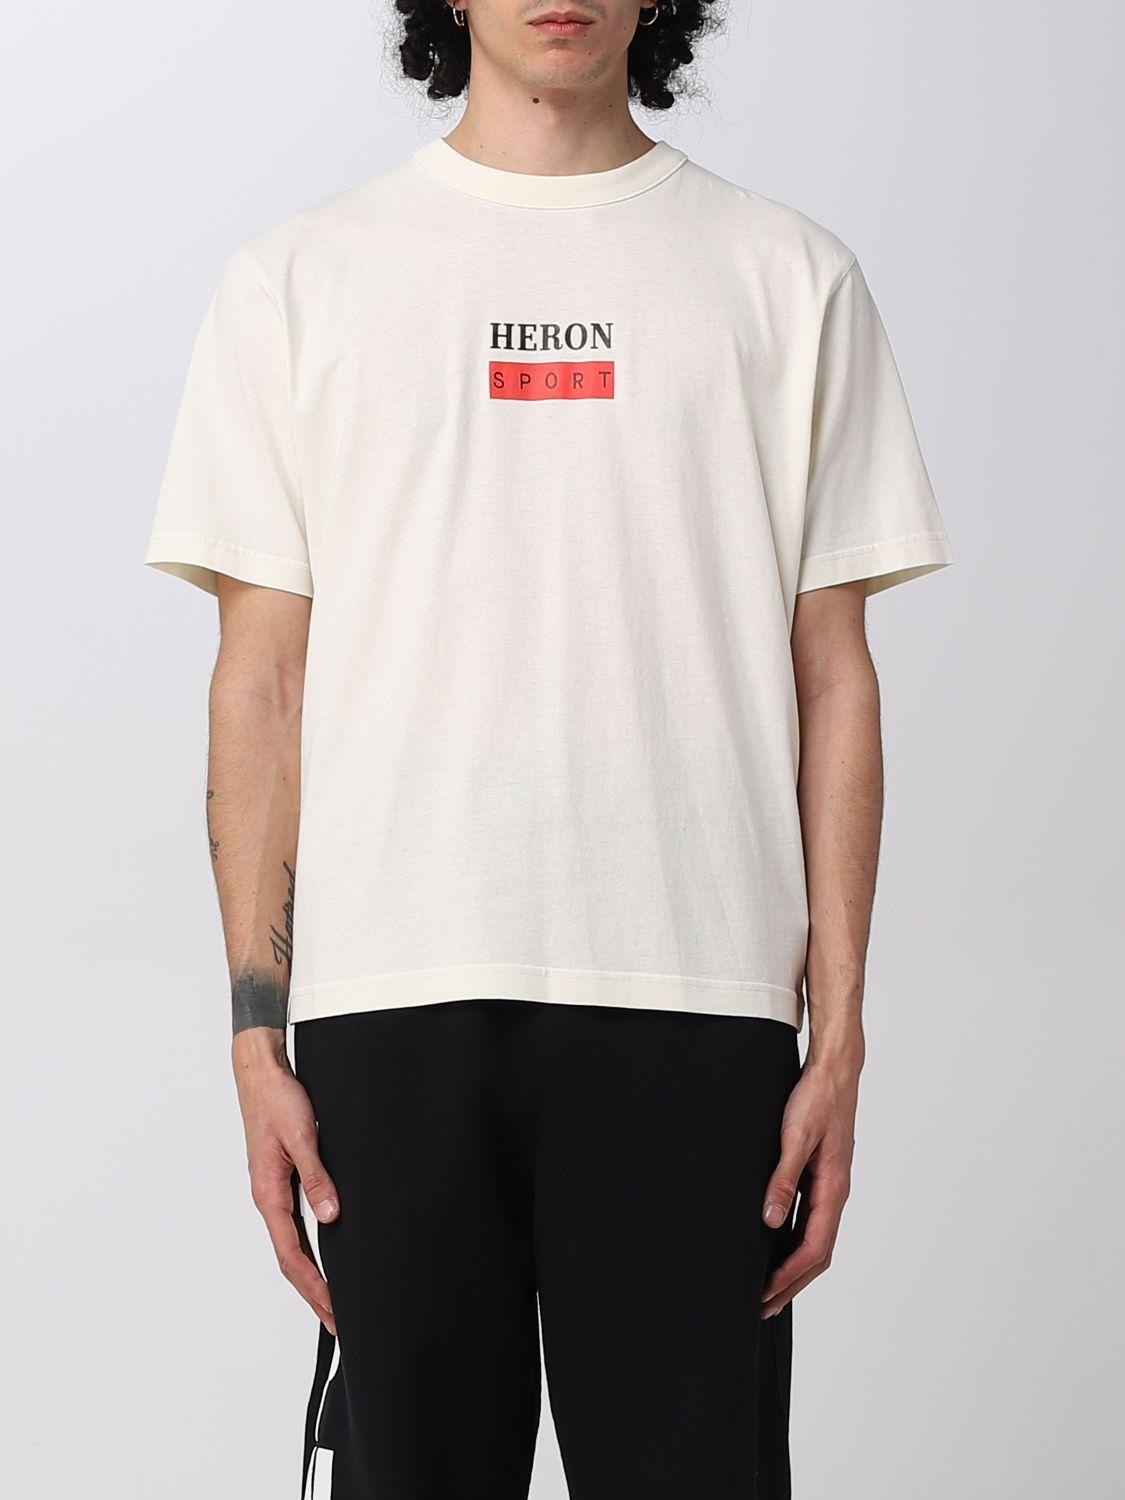 Heron Preston T-shirt in White for Men | Lyst